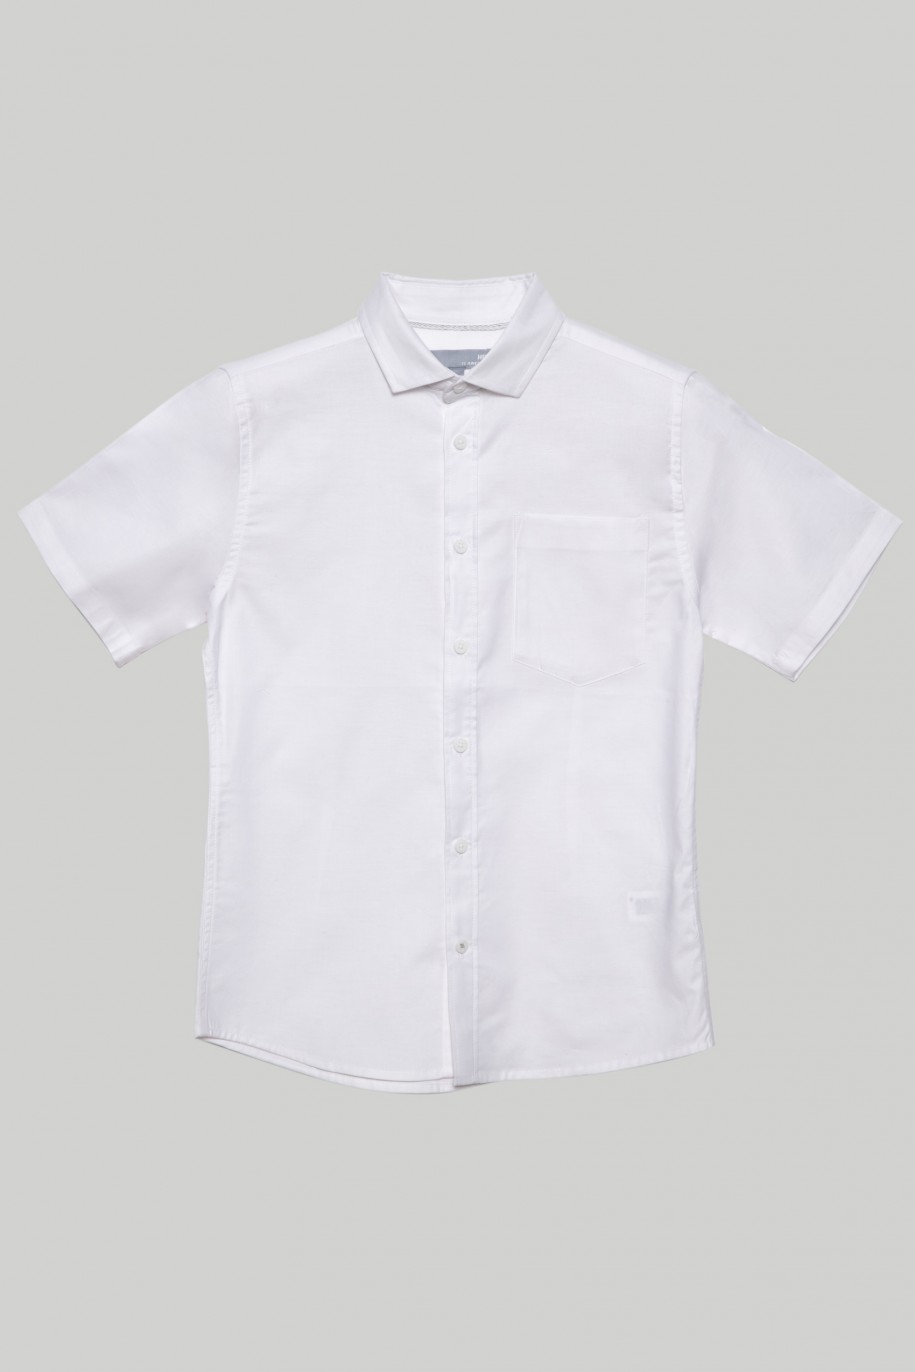 Biała klasyczna koszula z krótkim rękawem dla chłopaka - 29174